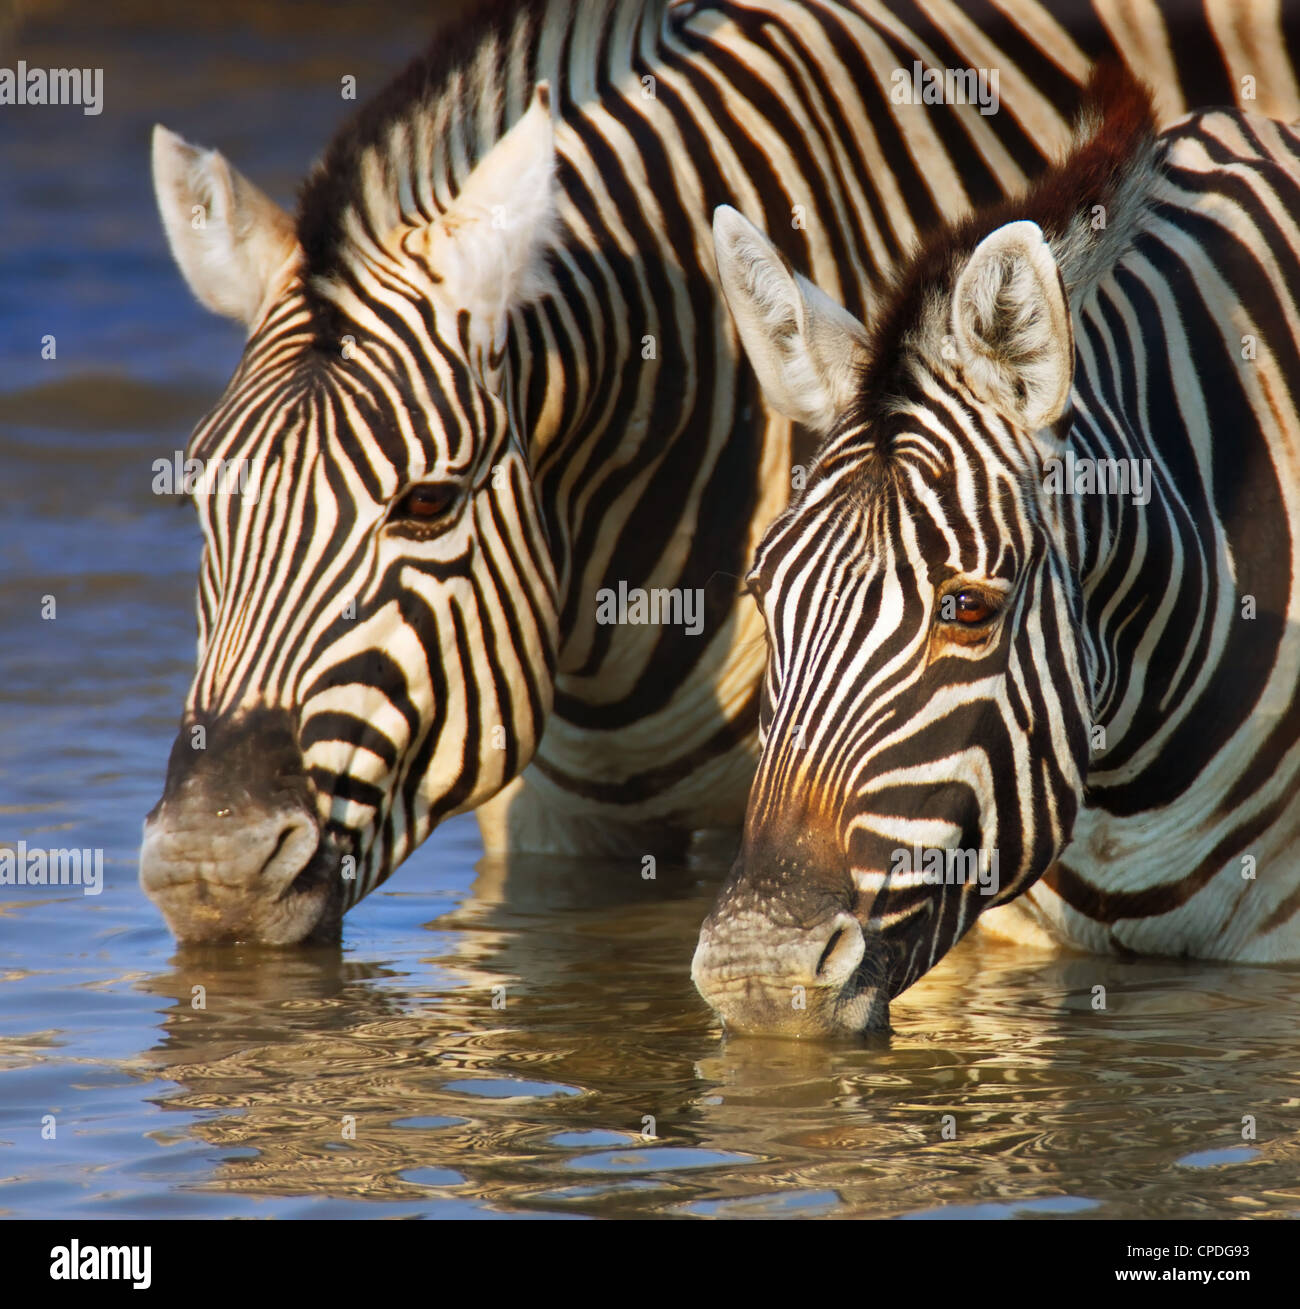 Close-up of two zebras drinking water; Etosha Stock Photo